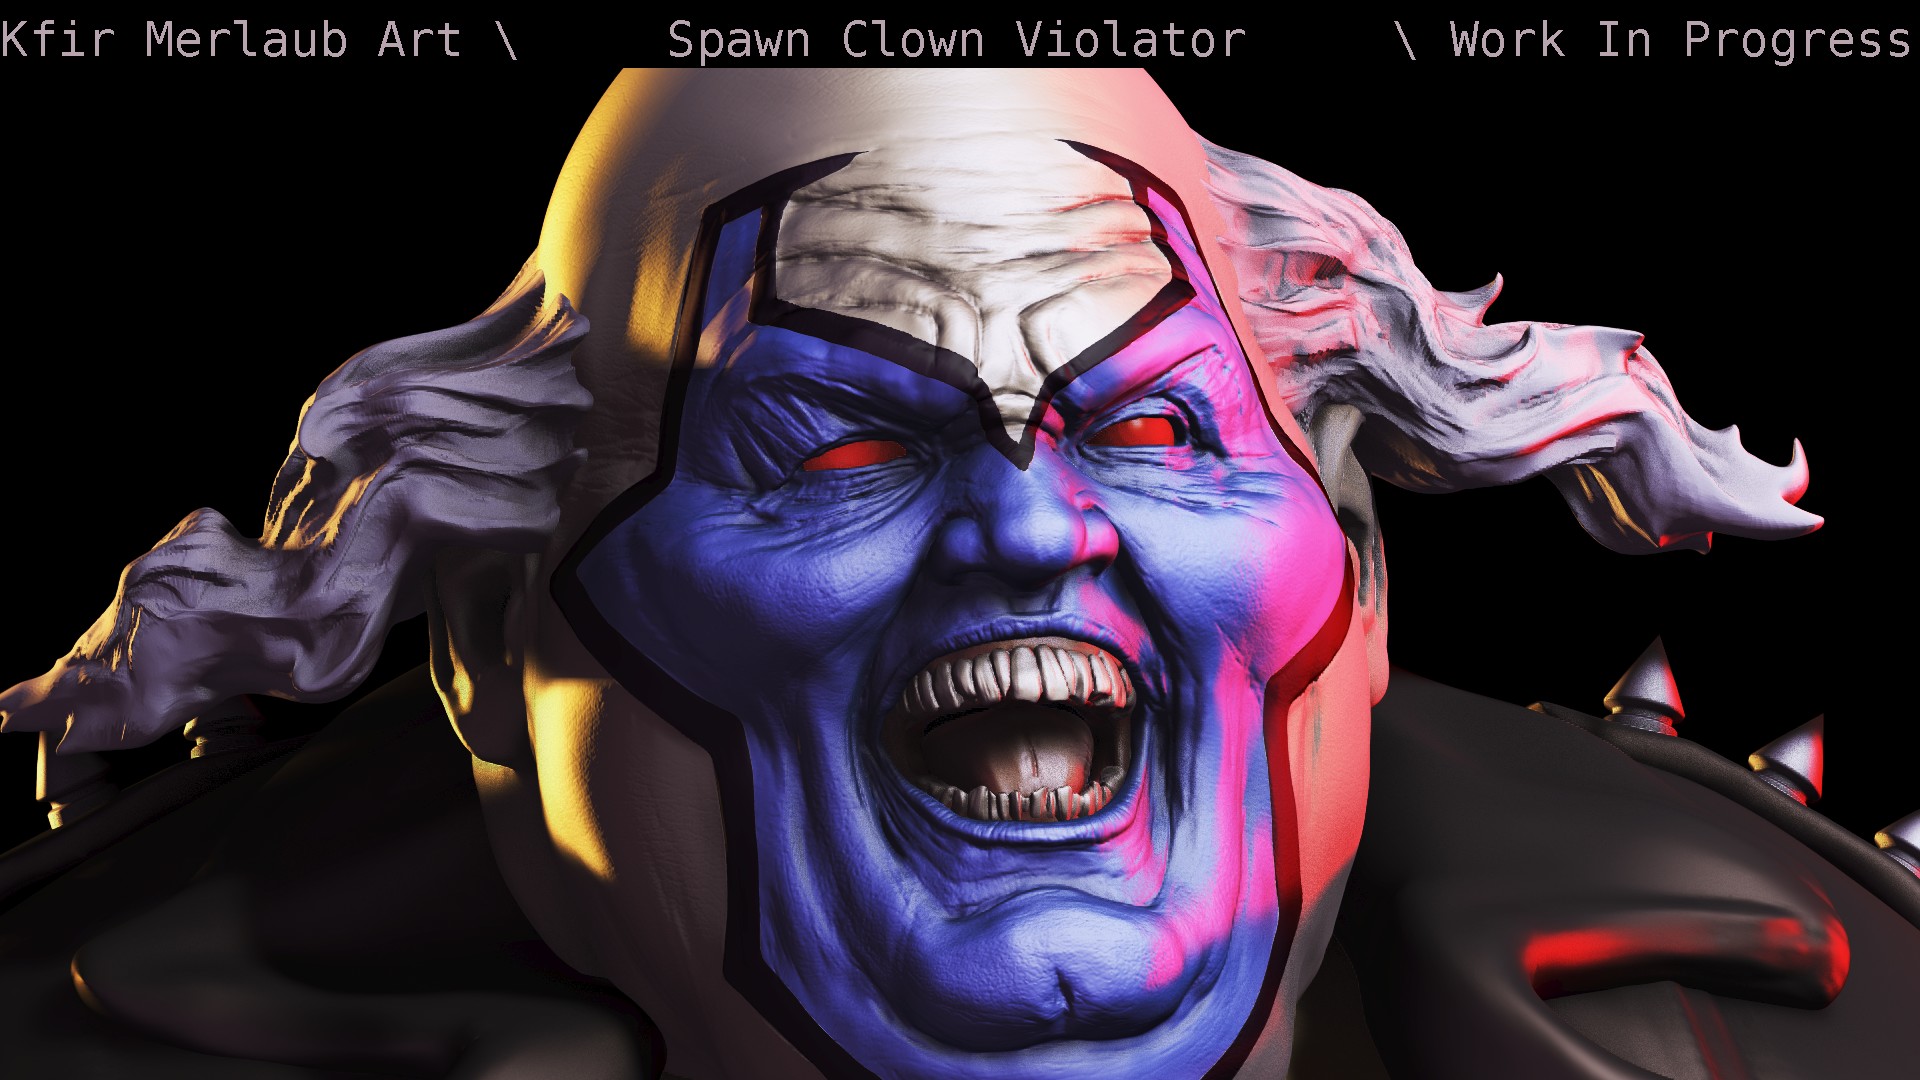 spawn clown